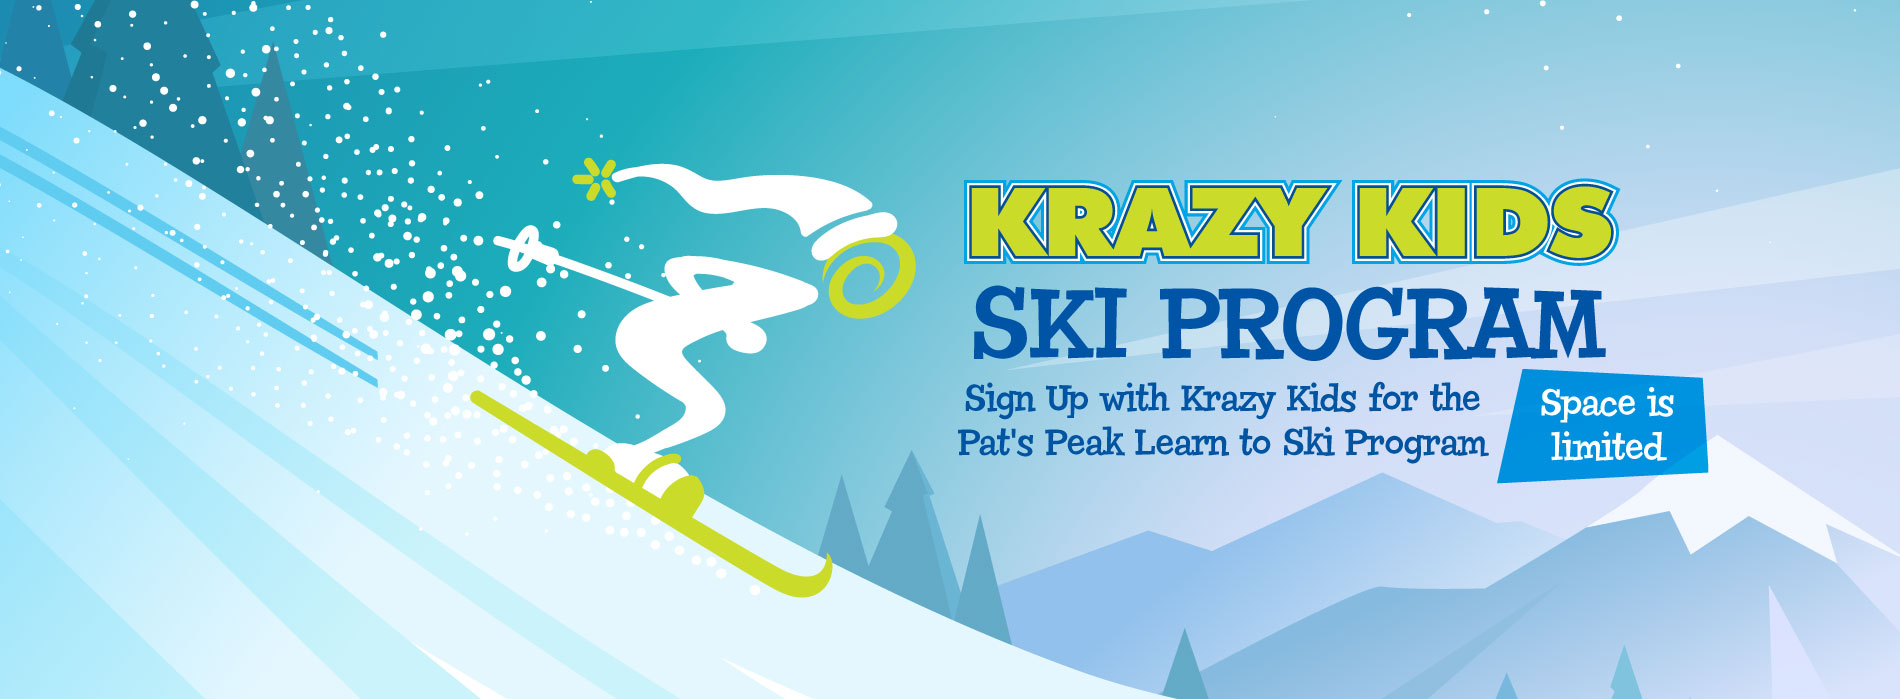 Krazy Kids Ski Program